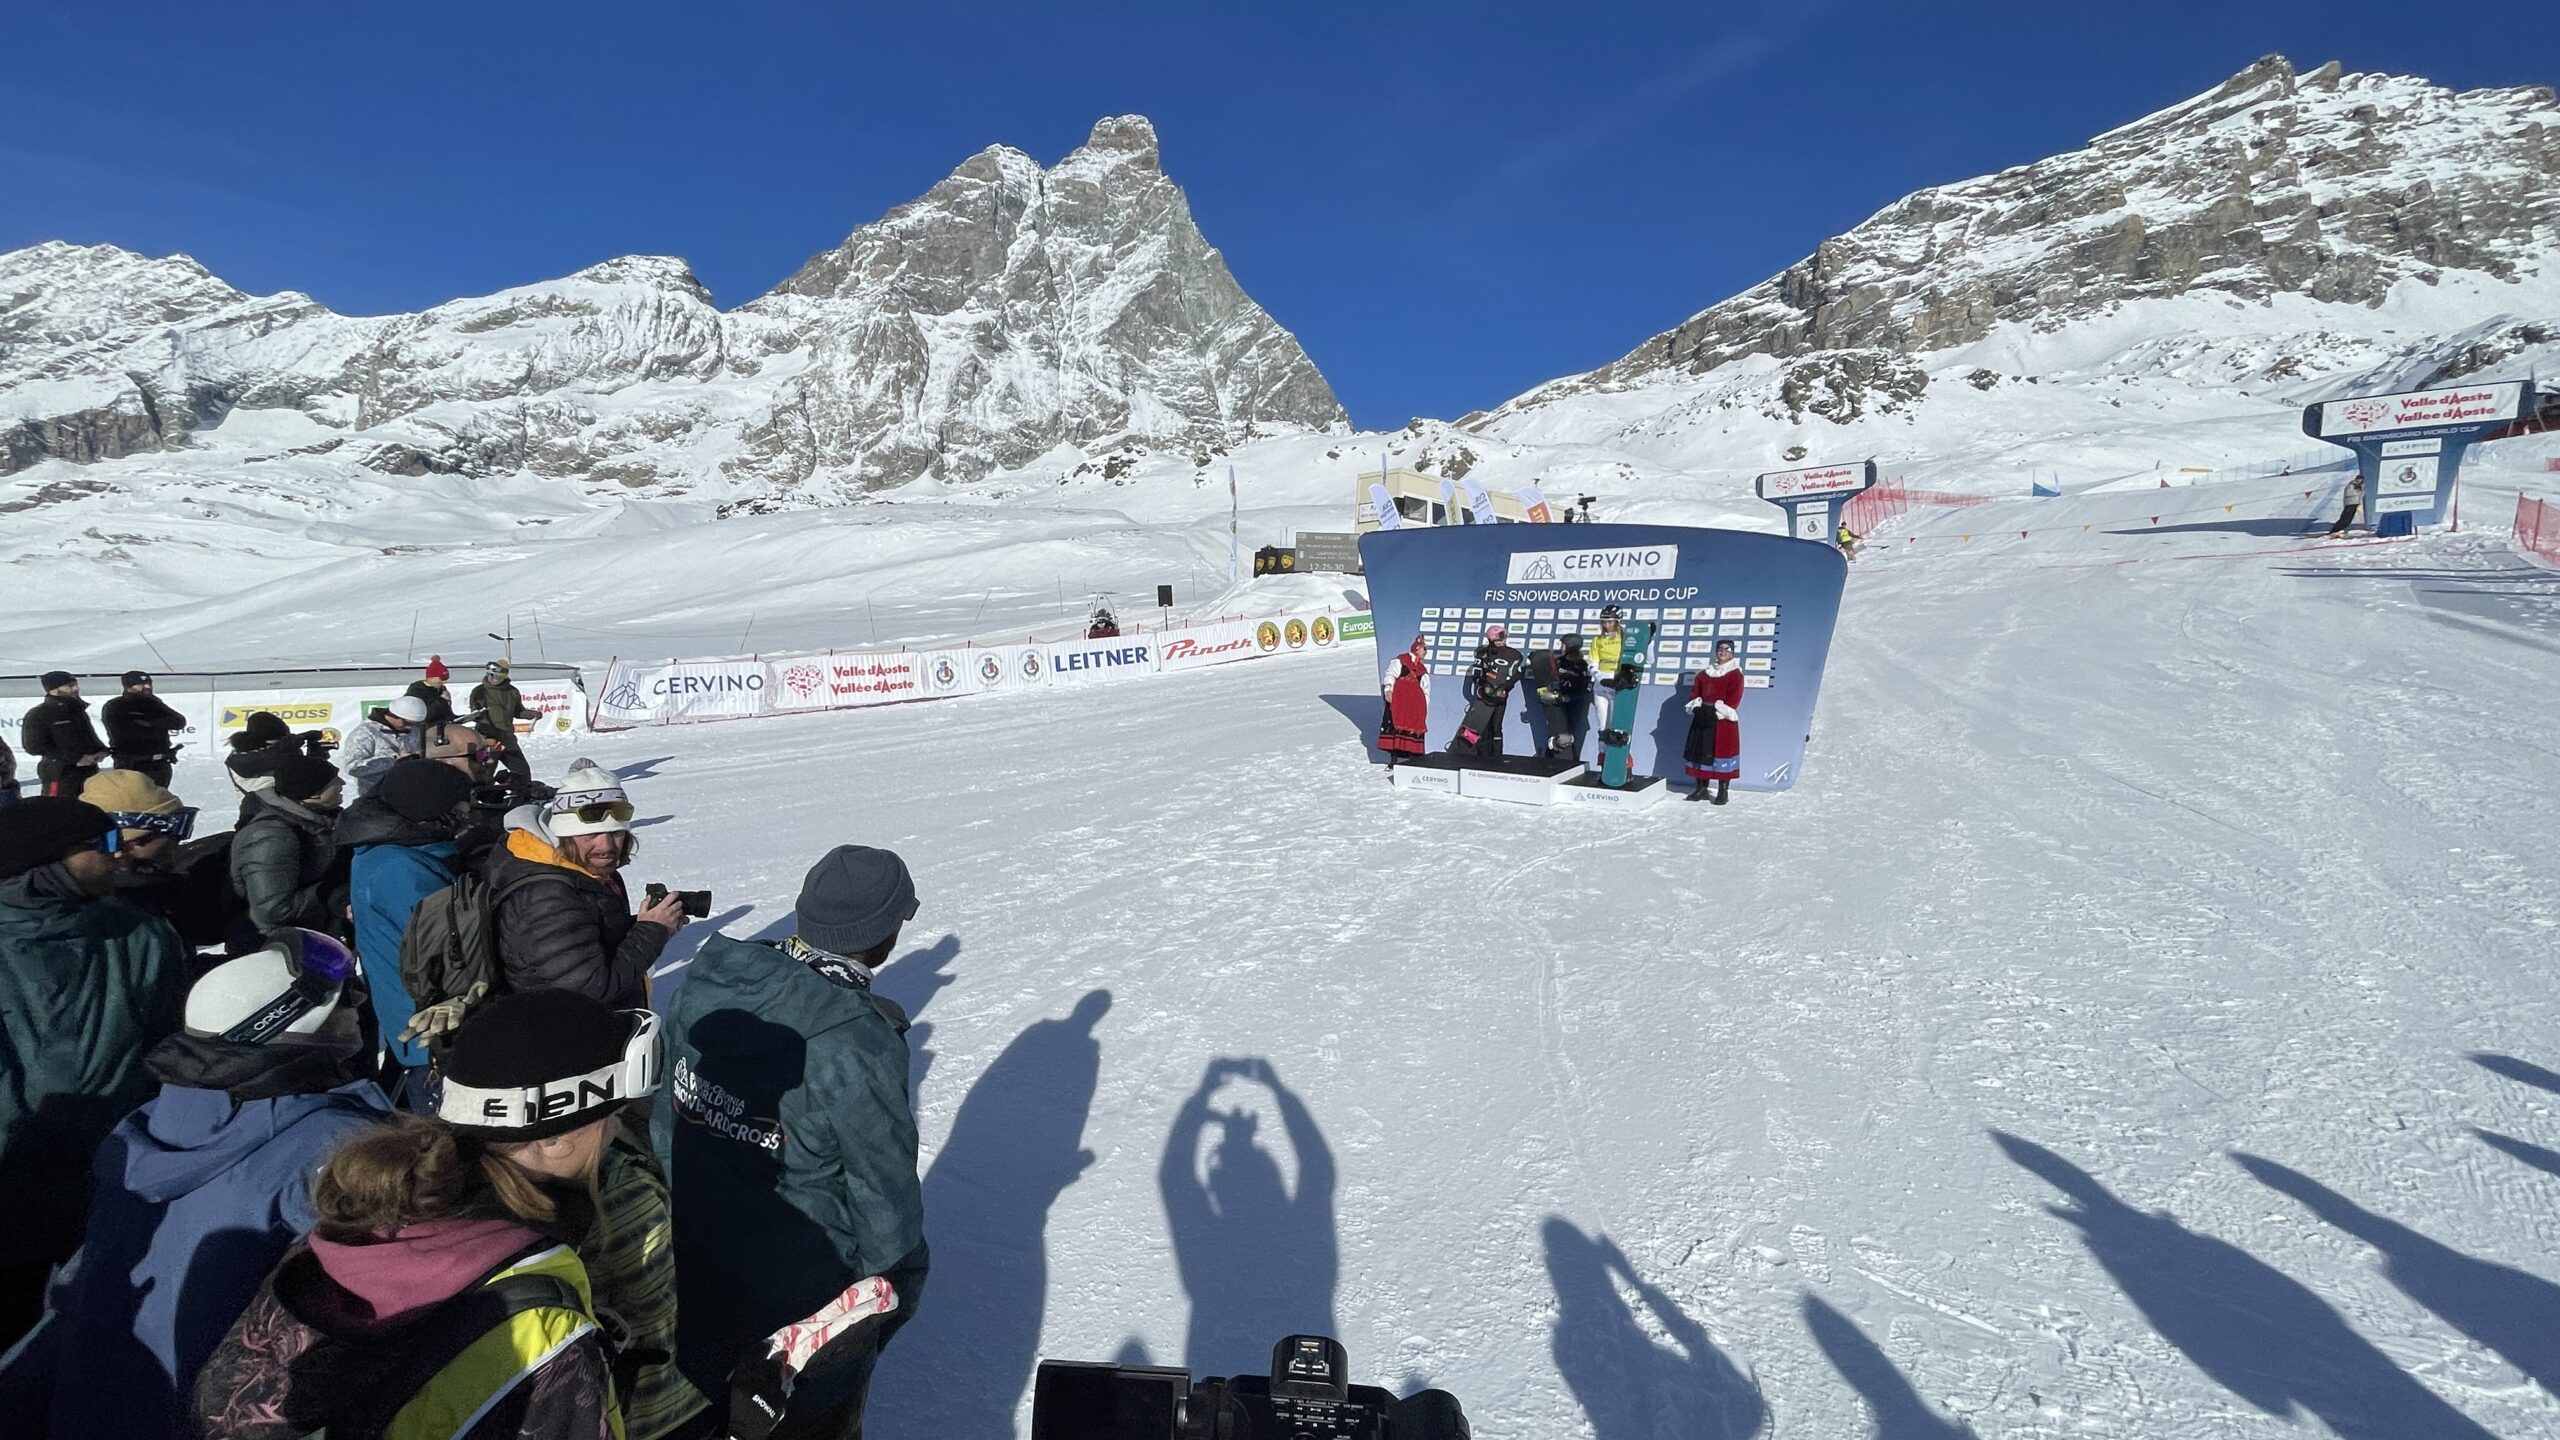 A Breuil-Cervinia la Coppa del Mondo di snowboardcross 2022